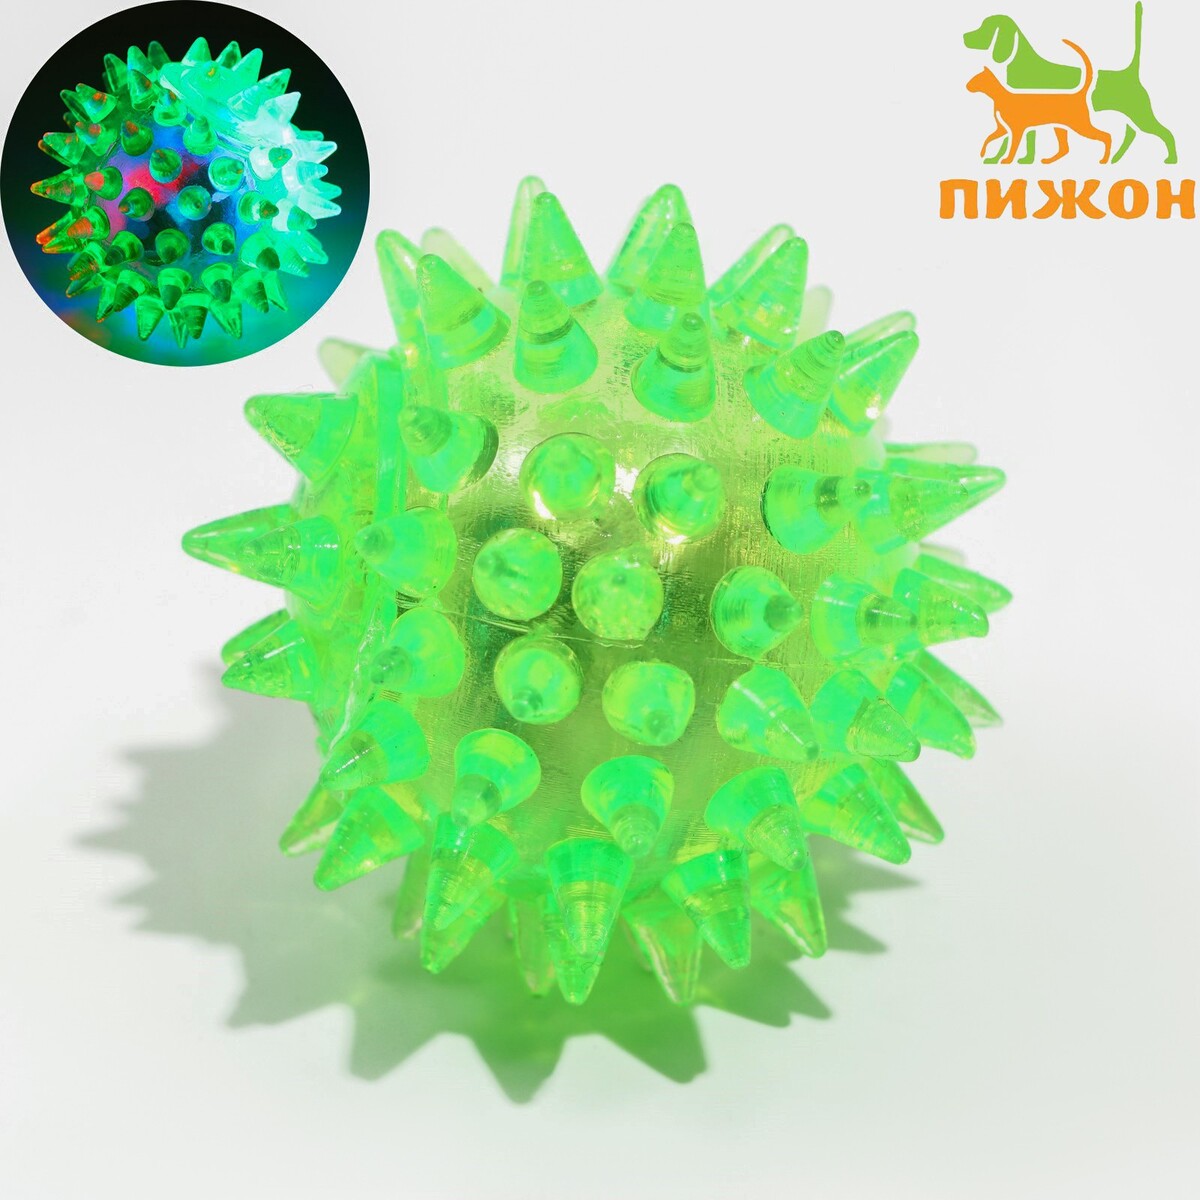 Мяч светящийся для животных малый, tpr, 4,5 см, зеленый мяч светящийся для животных малый tpr 4 5 см зеленый